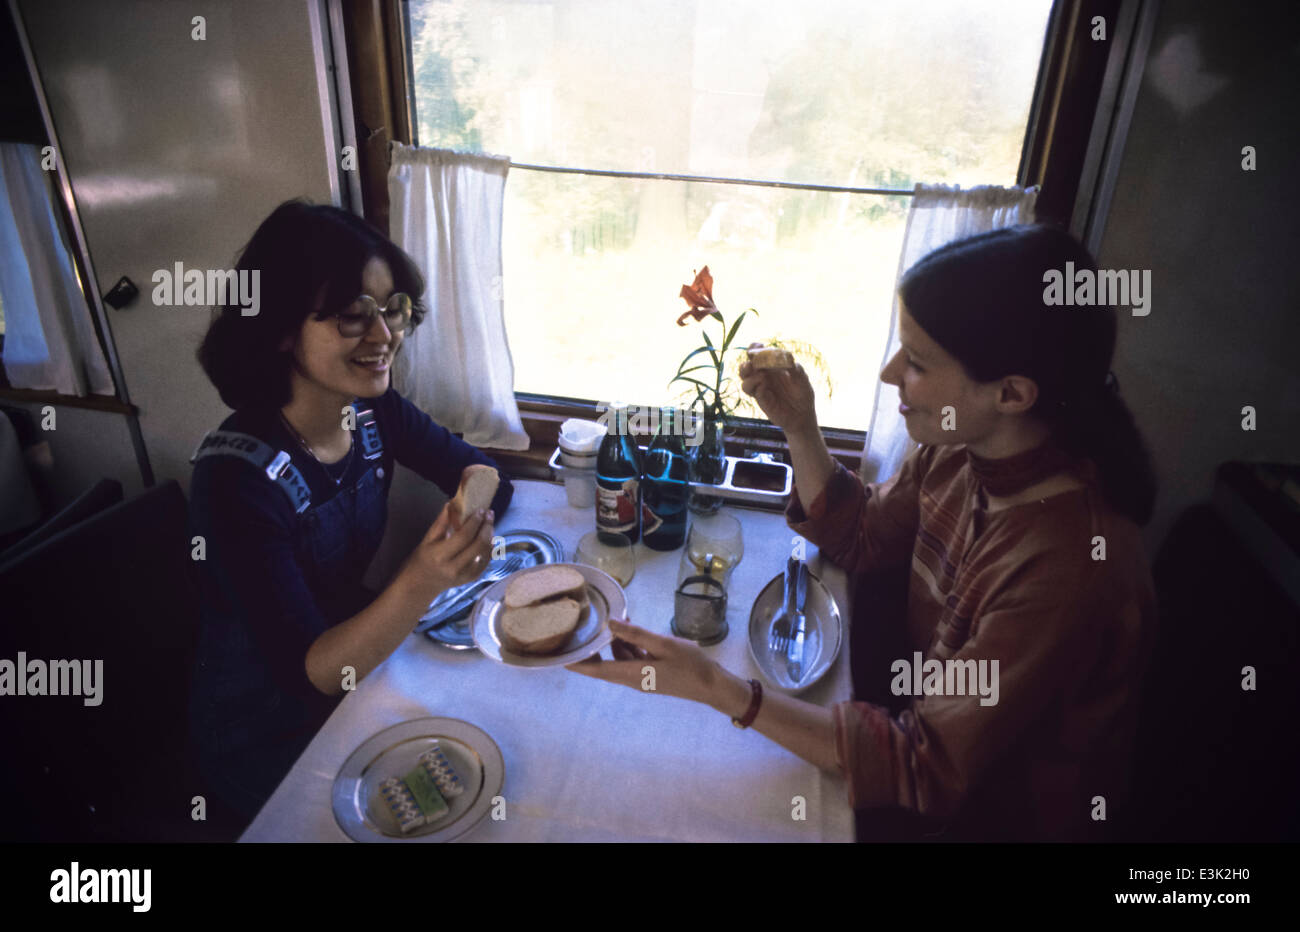 Urss,la Sibérie,deux femmes sur des chemins de fer trans-sibérien Banque D'Images